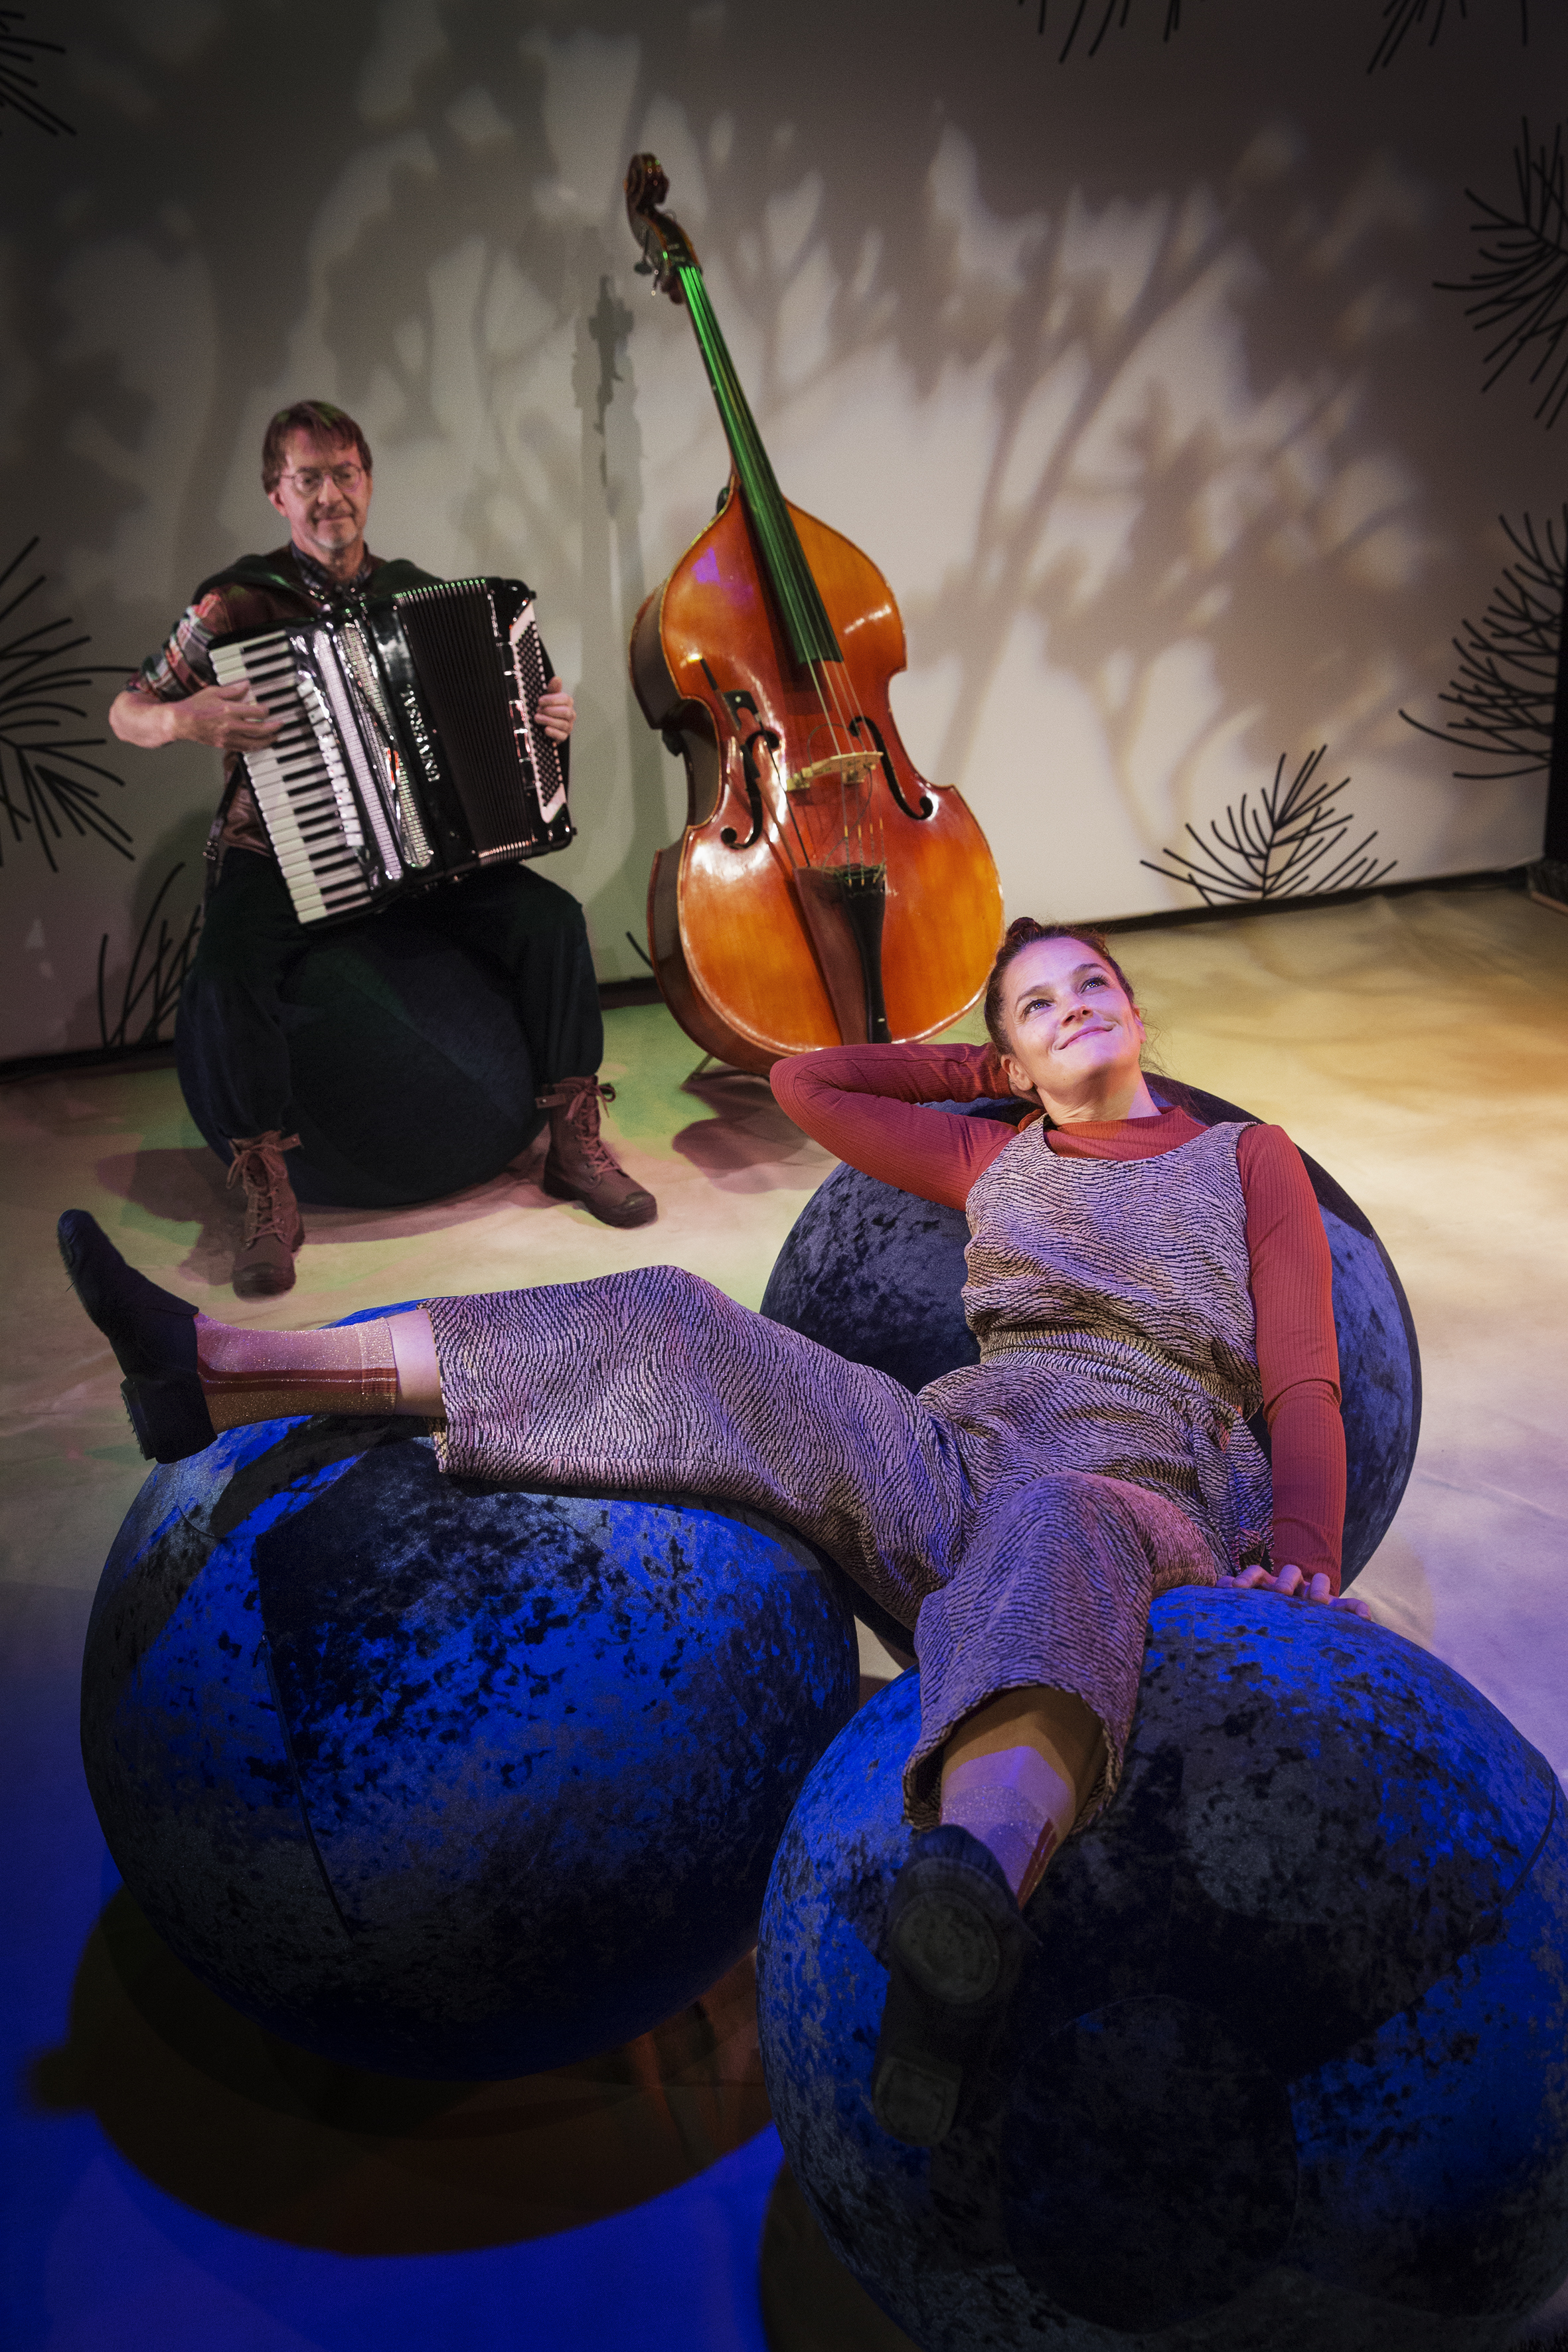 De två karaktärerna i föreställningen med stora blåbär och musikinstrument